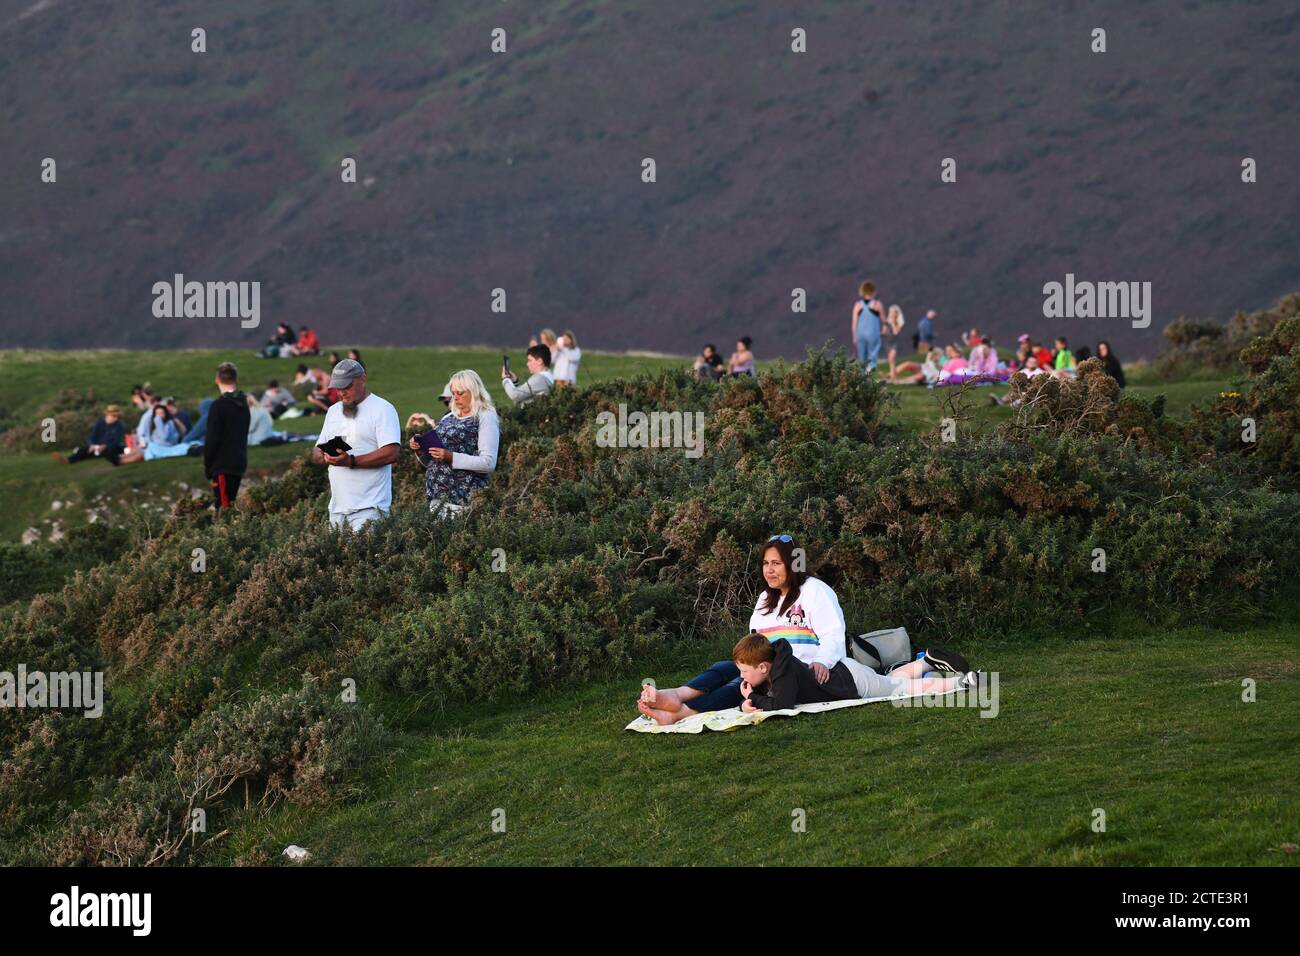 Rhossili, Gower, pays de Galles, Royaume-Uni. 21 septembre 2020 des personnes se jettent sur les falaises de la baie de Rhossili, sur la côte Gower de Swansea, pour admirer un coucher de soleil spectaculaire derrière Banque D'Images